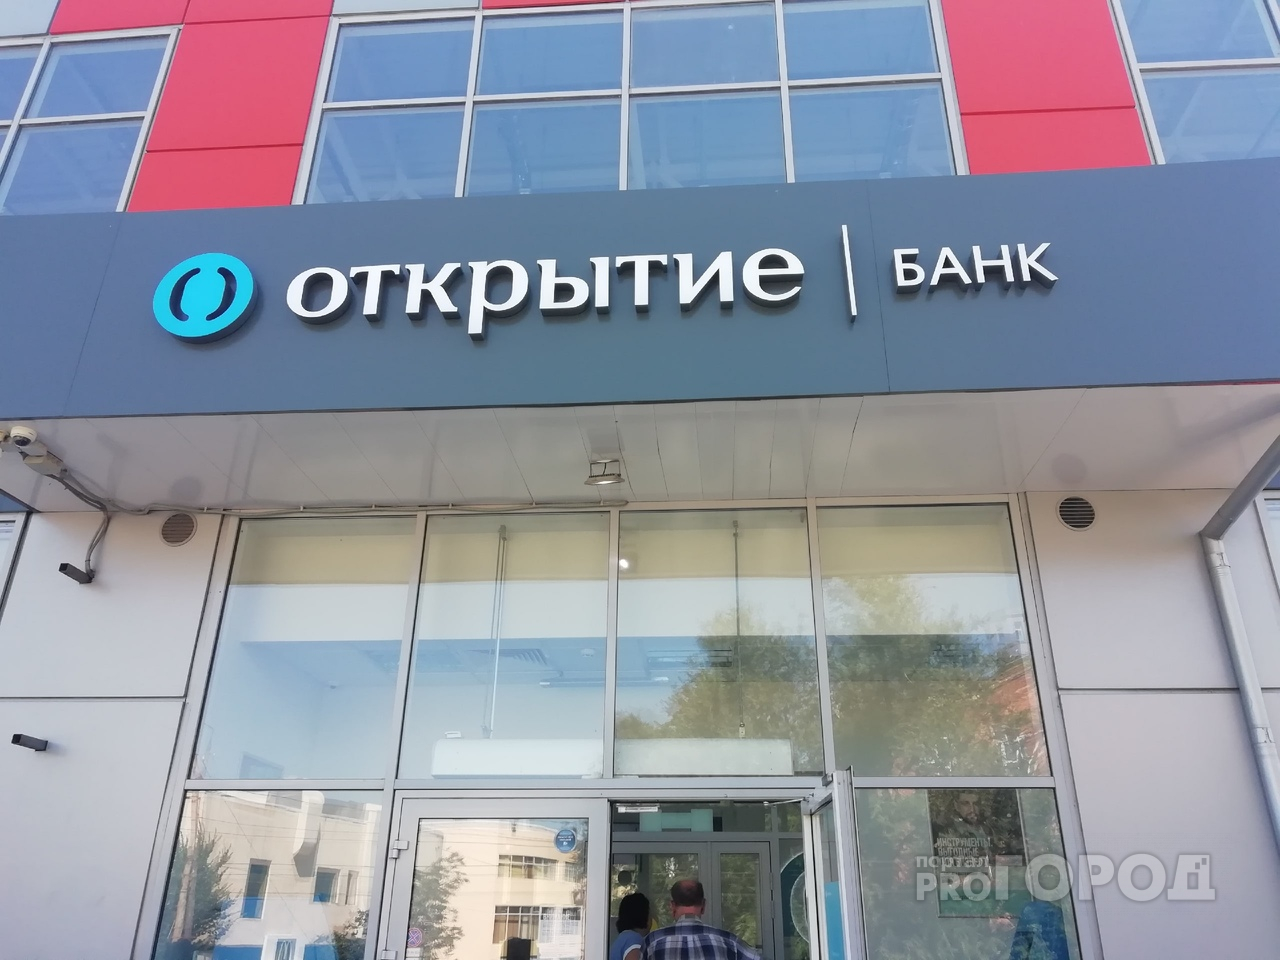 Чистая прибыль банка «Открытие» по РСБУ в августе увеличилась на 0,3 млрд рублей и достигла 24,8 млрд рублей